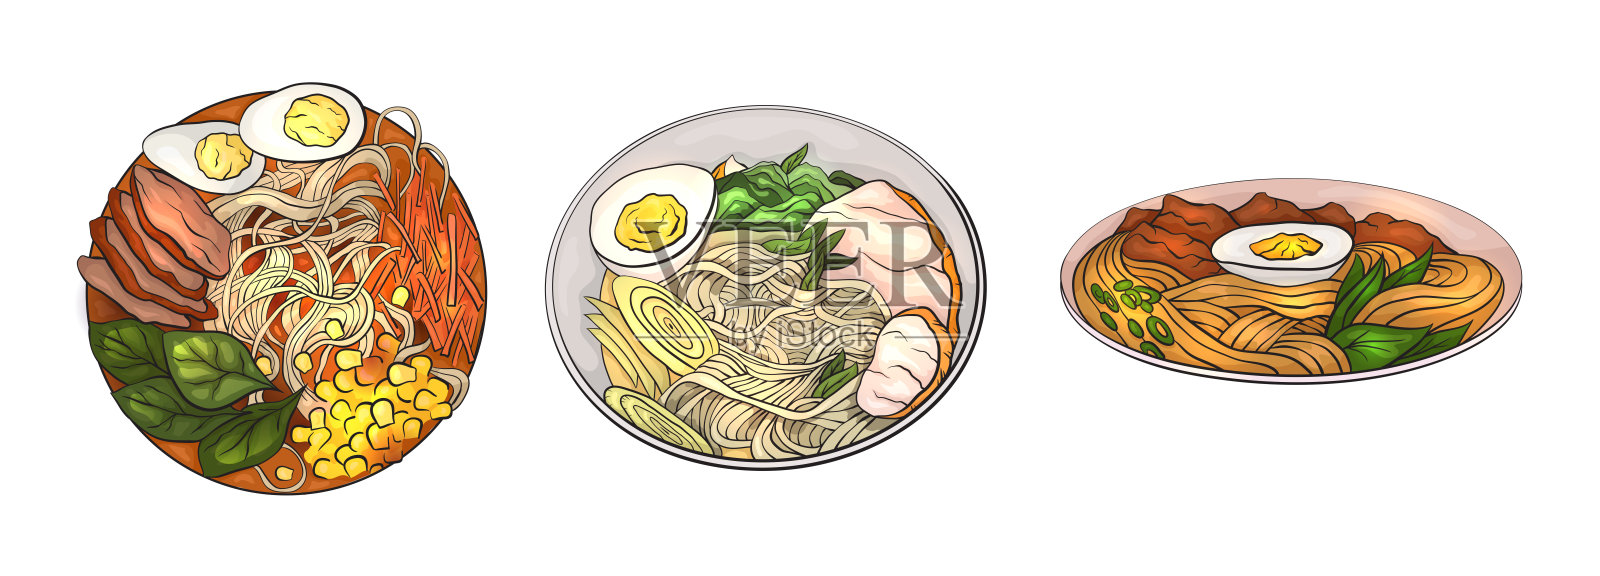 一套卡通菜肴与面条。日本传统拉面。亚洲不同的午餐。物体与背景是分开的。向量元素插画图片素材